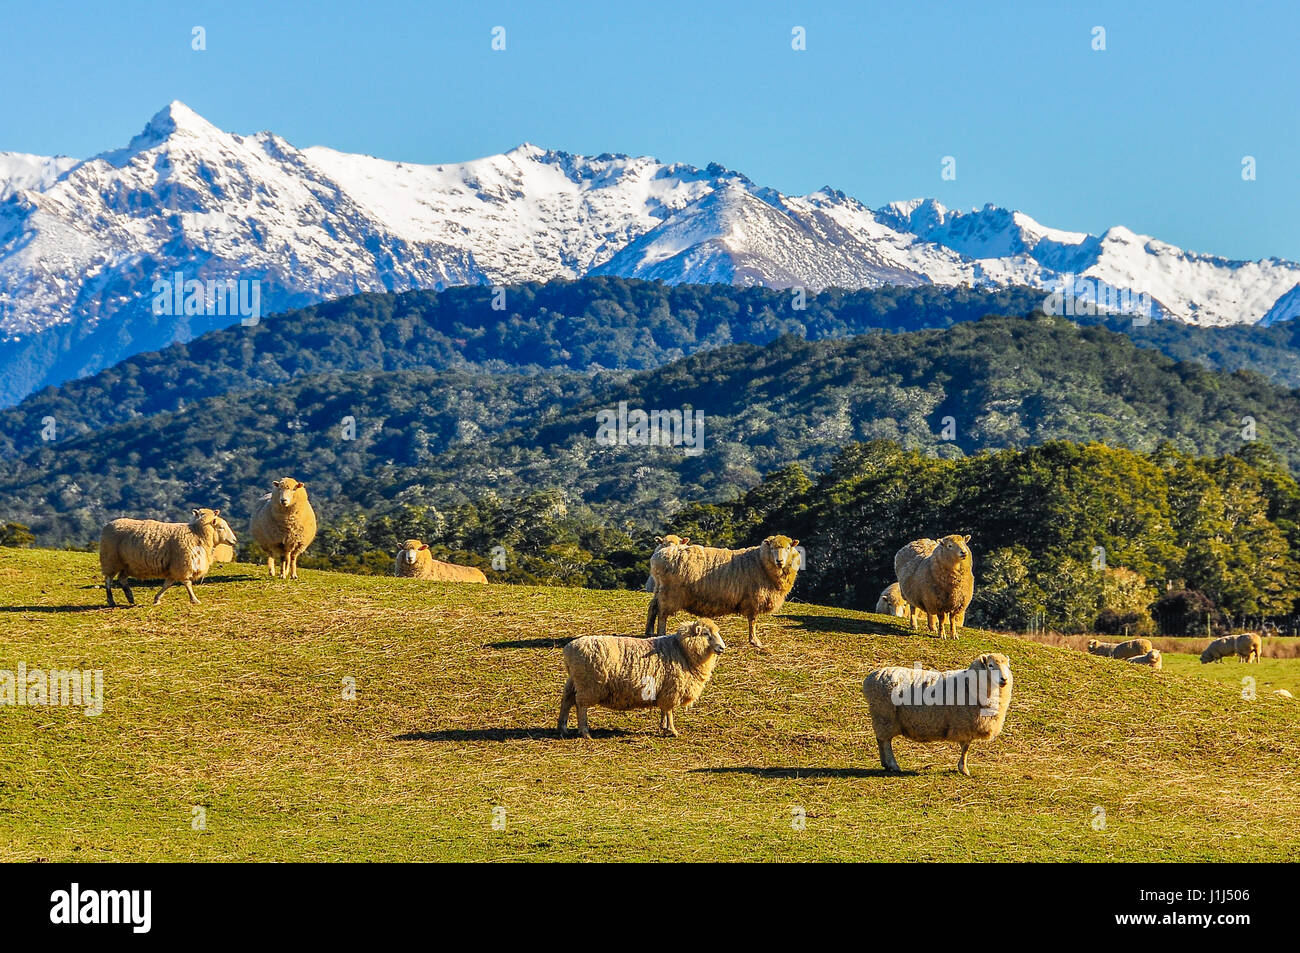 Moutons dans un pré vert et les montagnes enneigées en arrière-plan dans le sud de l'itinéraire touristique, Nouvelle-Zélande Banque D'Images